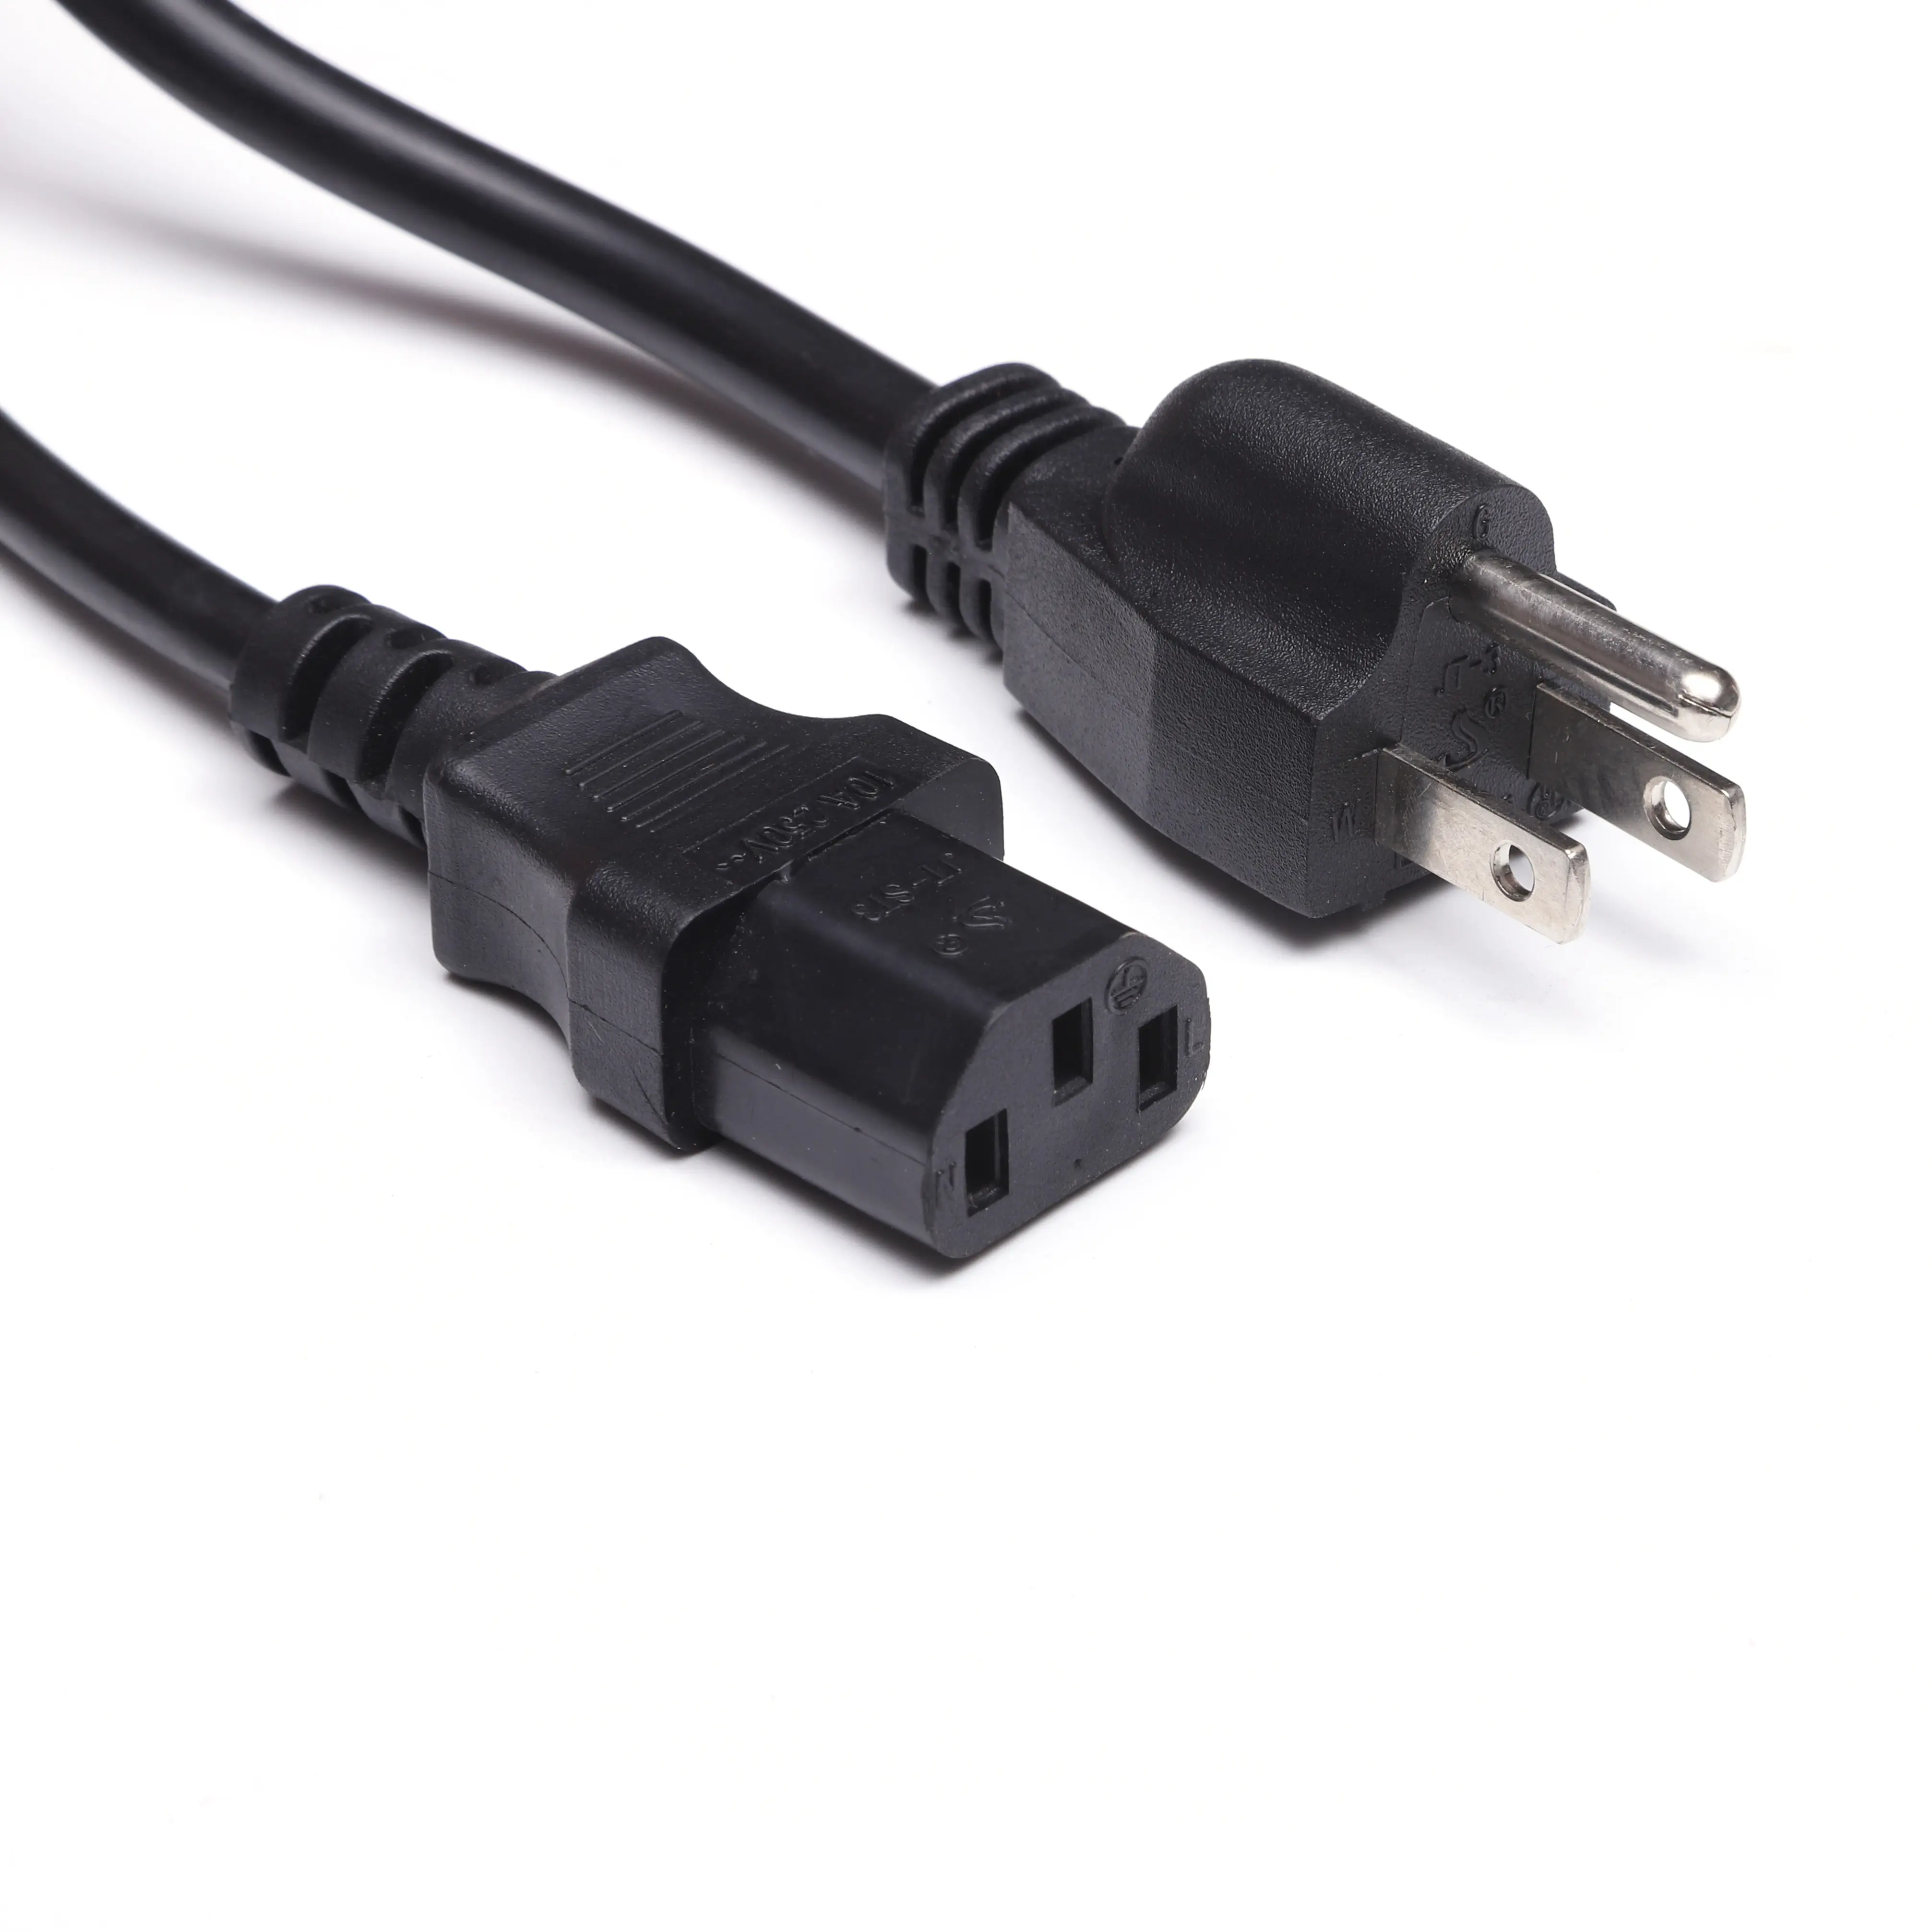 Standar Amerika USA UK AU EU ac kabel daya kabel daya gratis sampel 3pin steker us 3 pin kabel daya untuk komputer